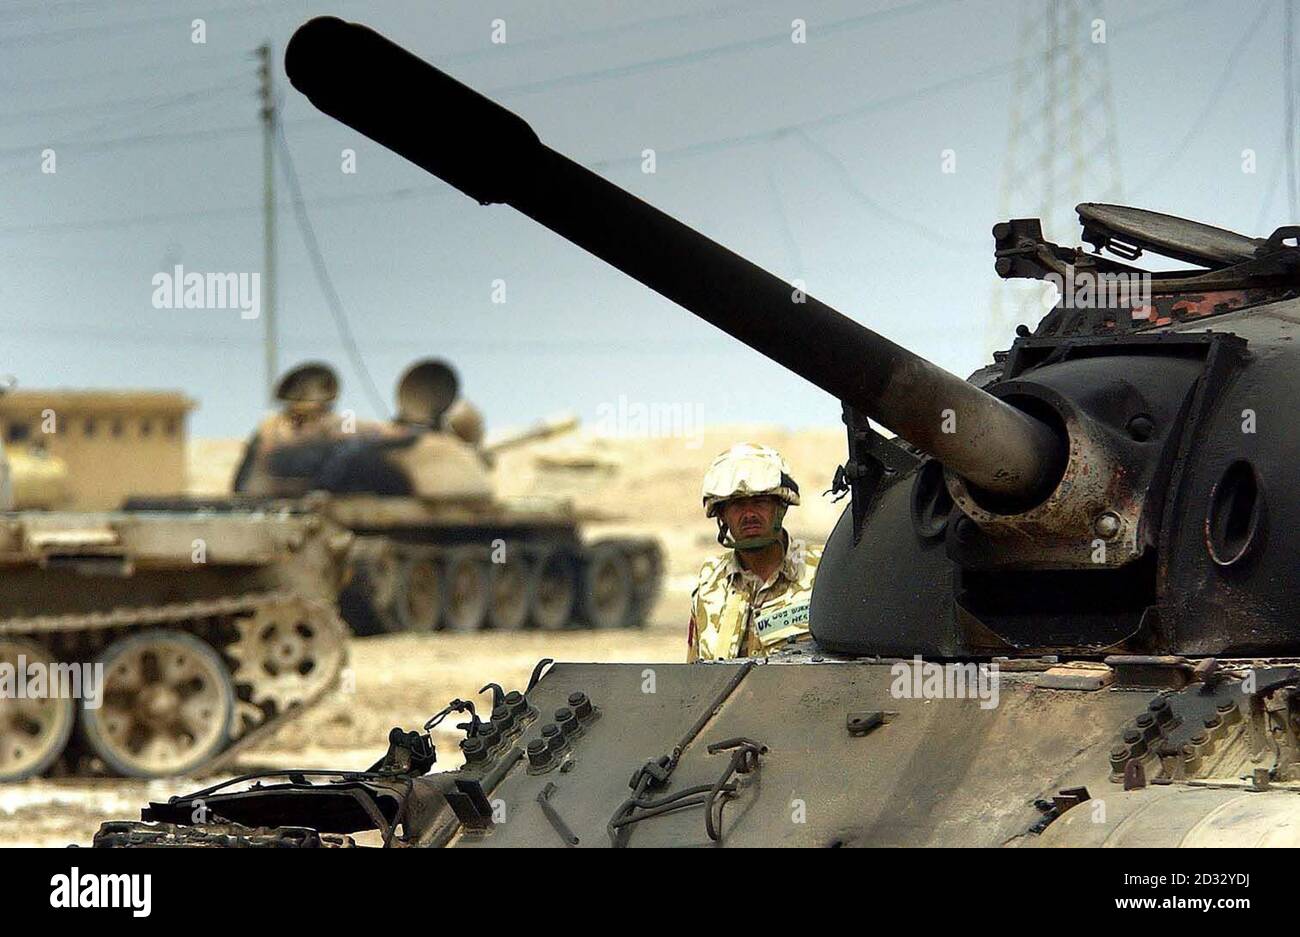 Ein para inspiziert einen Panzer außerhalb der irakischen Kaserne, nachdem er von einem A10 Tankbuster-Flugzeug in der Stadt Ad Dayr, nördlich von Basra, Irak, zerstört wurde. Stockfoto